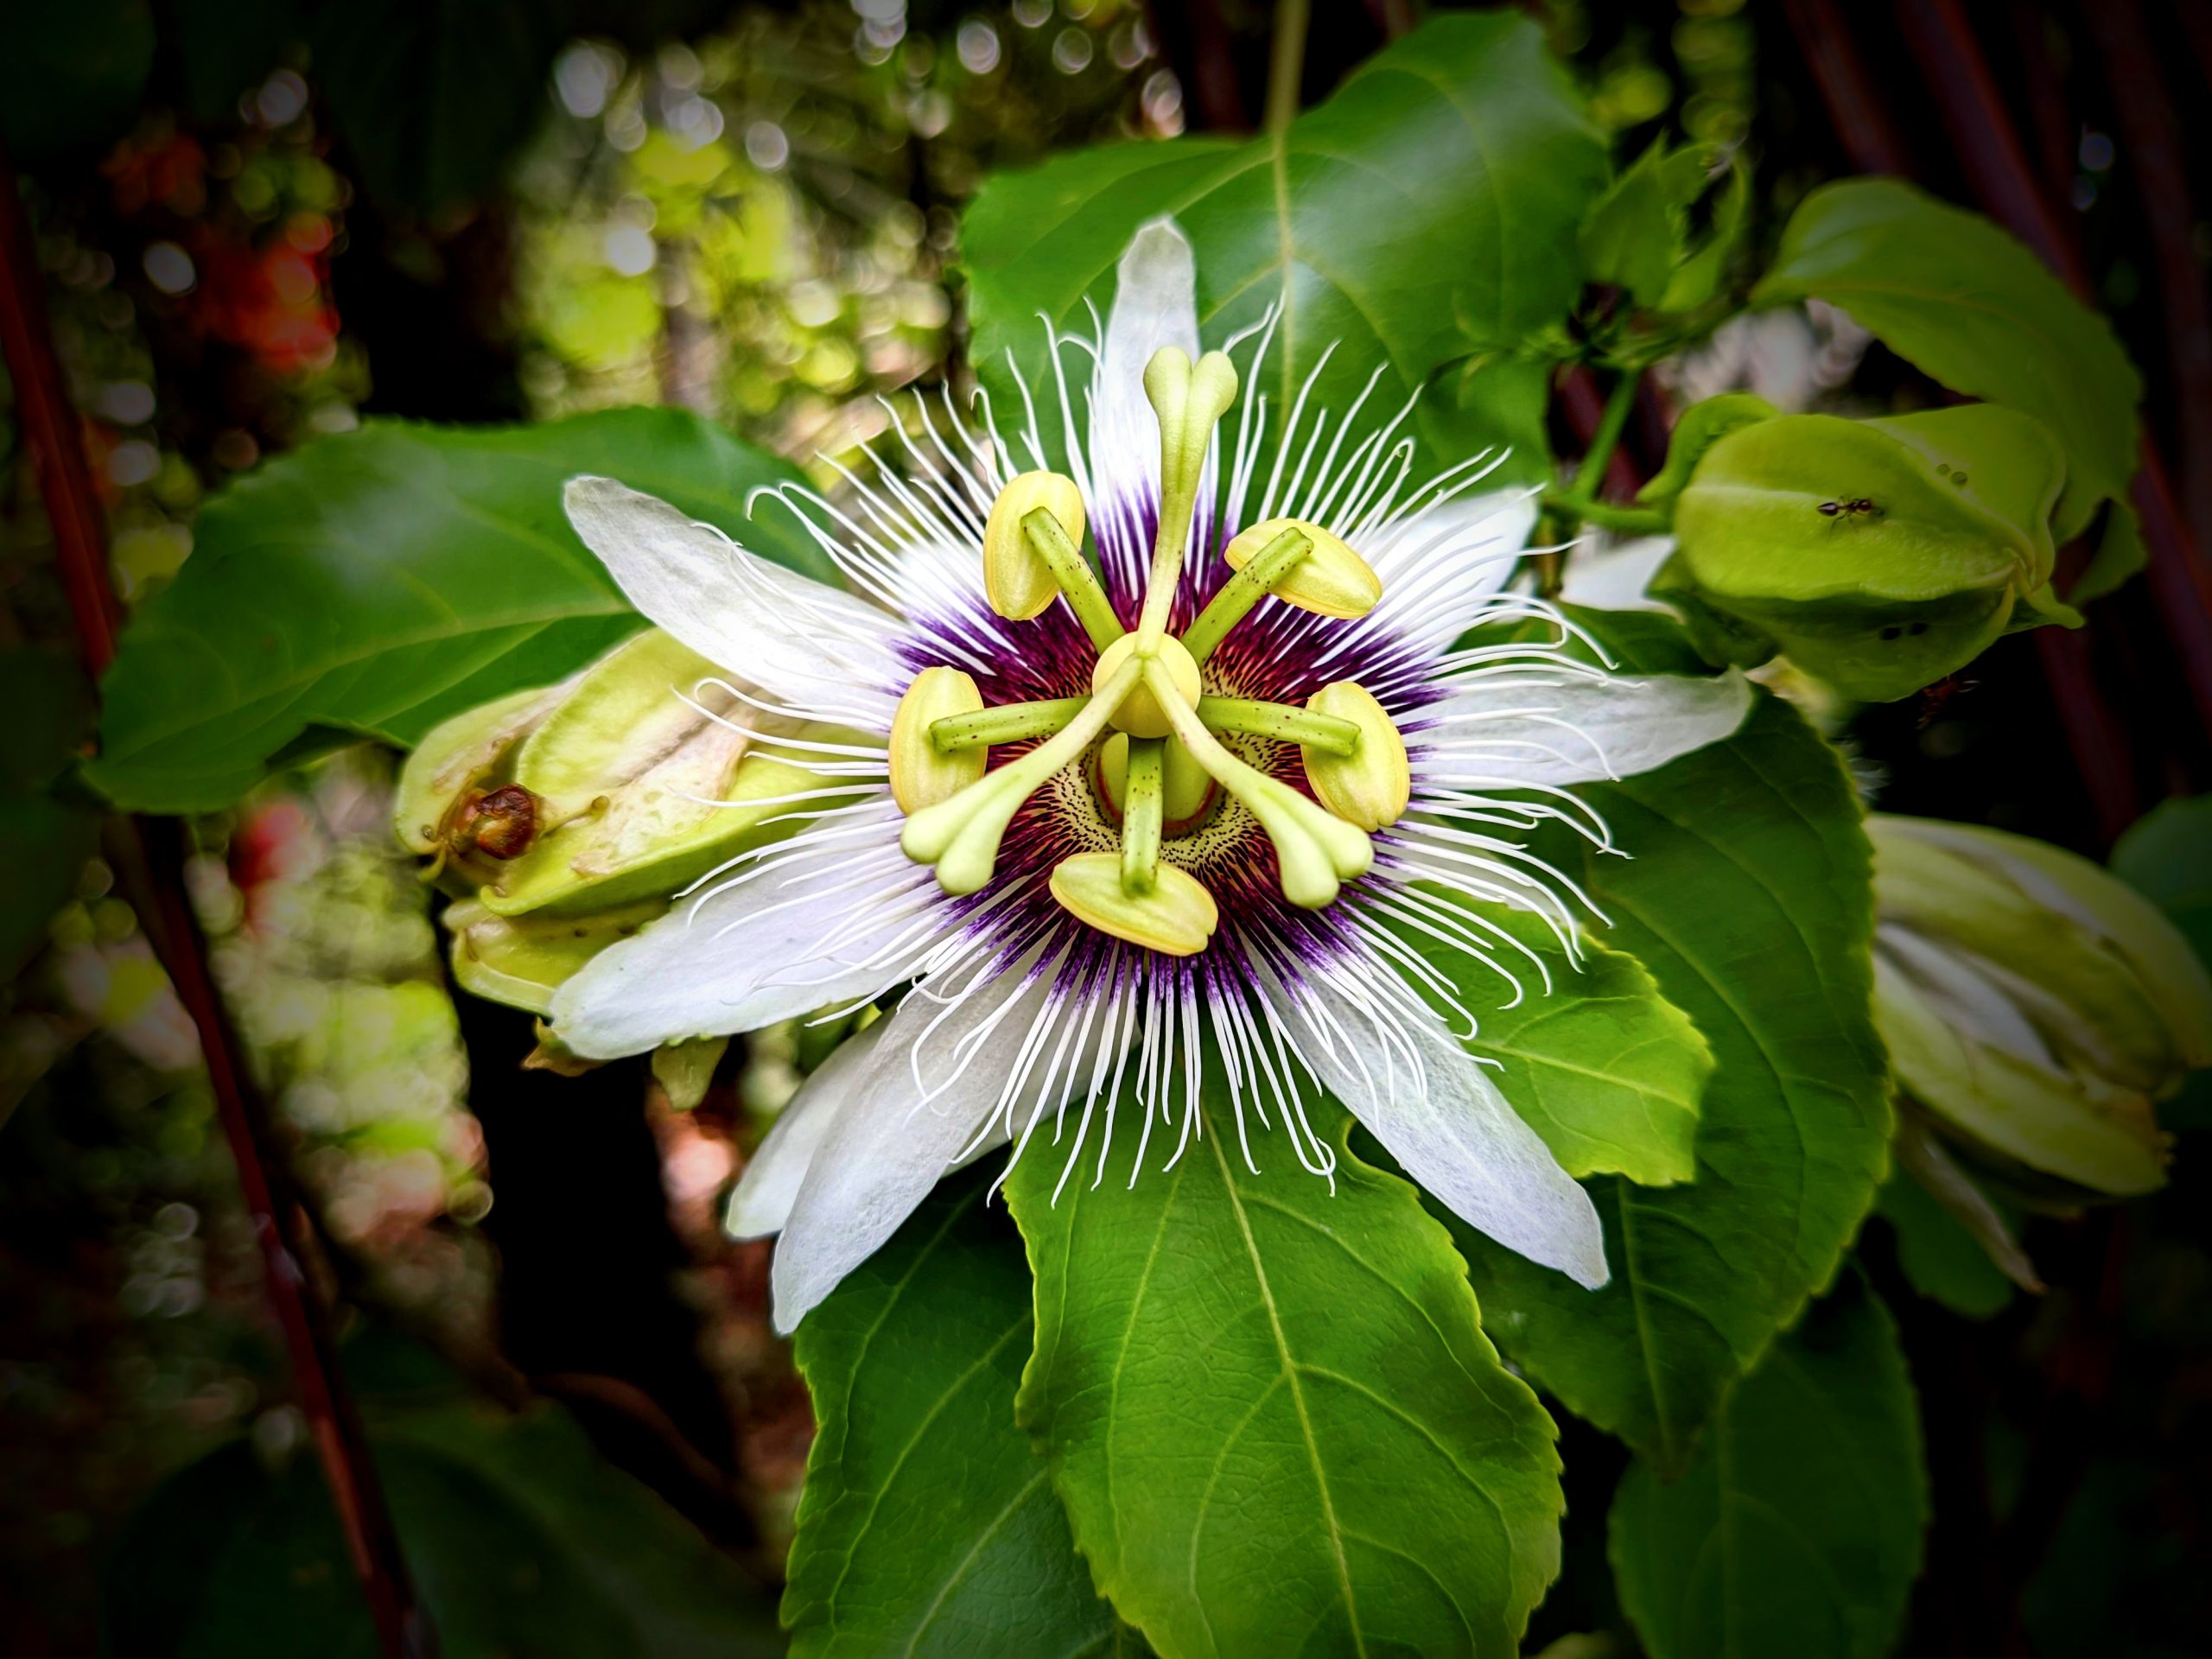 A unique flower